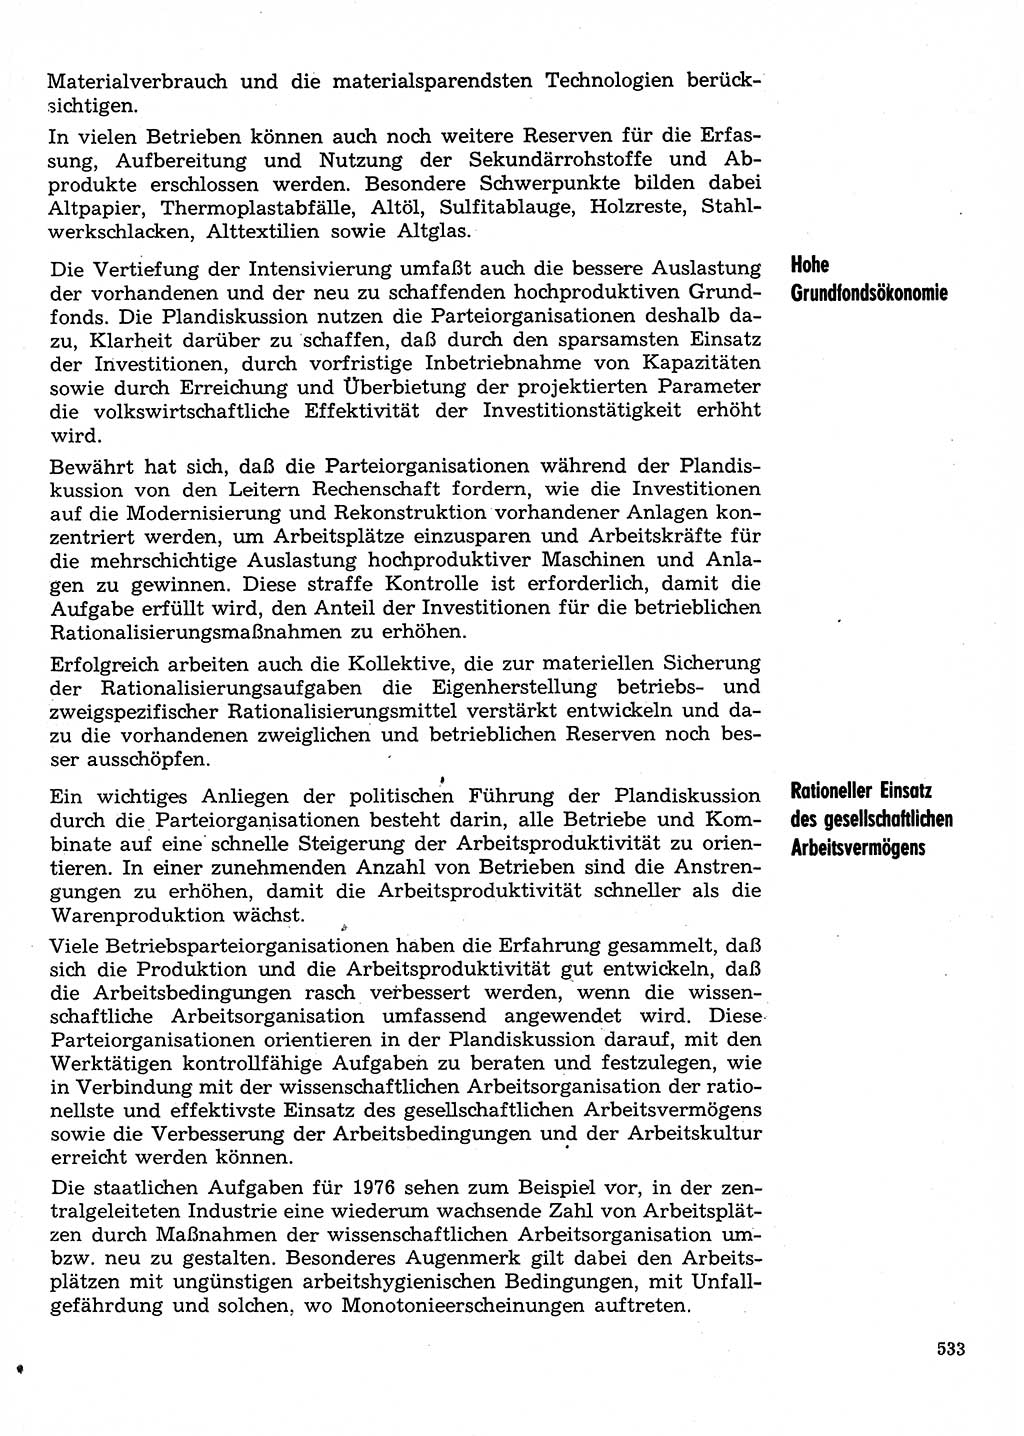 Neuer Weg (NW), Organ des Zentralkomitees (ZK) der SED (Sozialistische Einheitspartei Deutschlands) für Fragen des Parteilebens, 30. Jahrgang [Deutsche Demokratische Republik (DDR)] 1975, Seite 533 (NW ZK SED DDR 1975, S. 533)